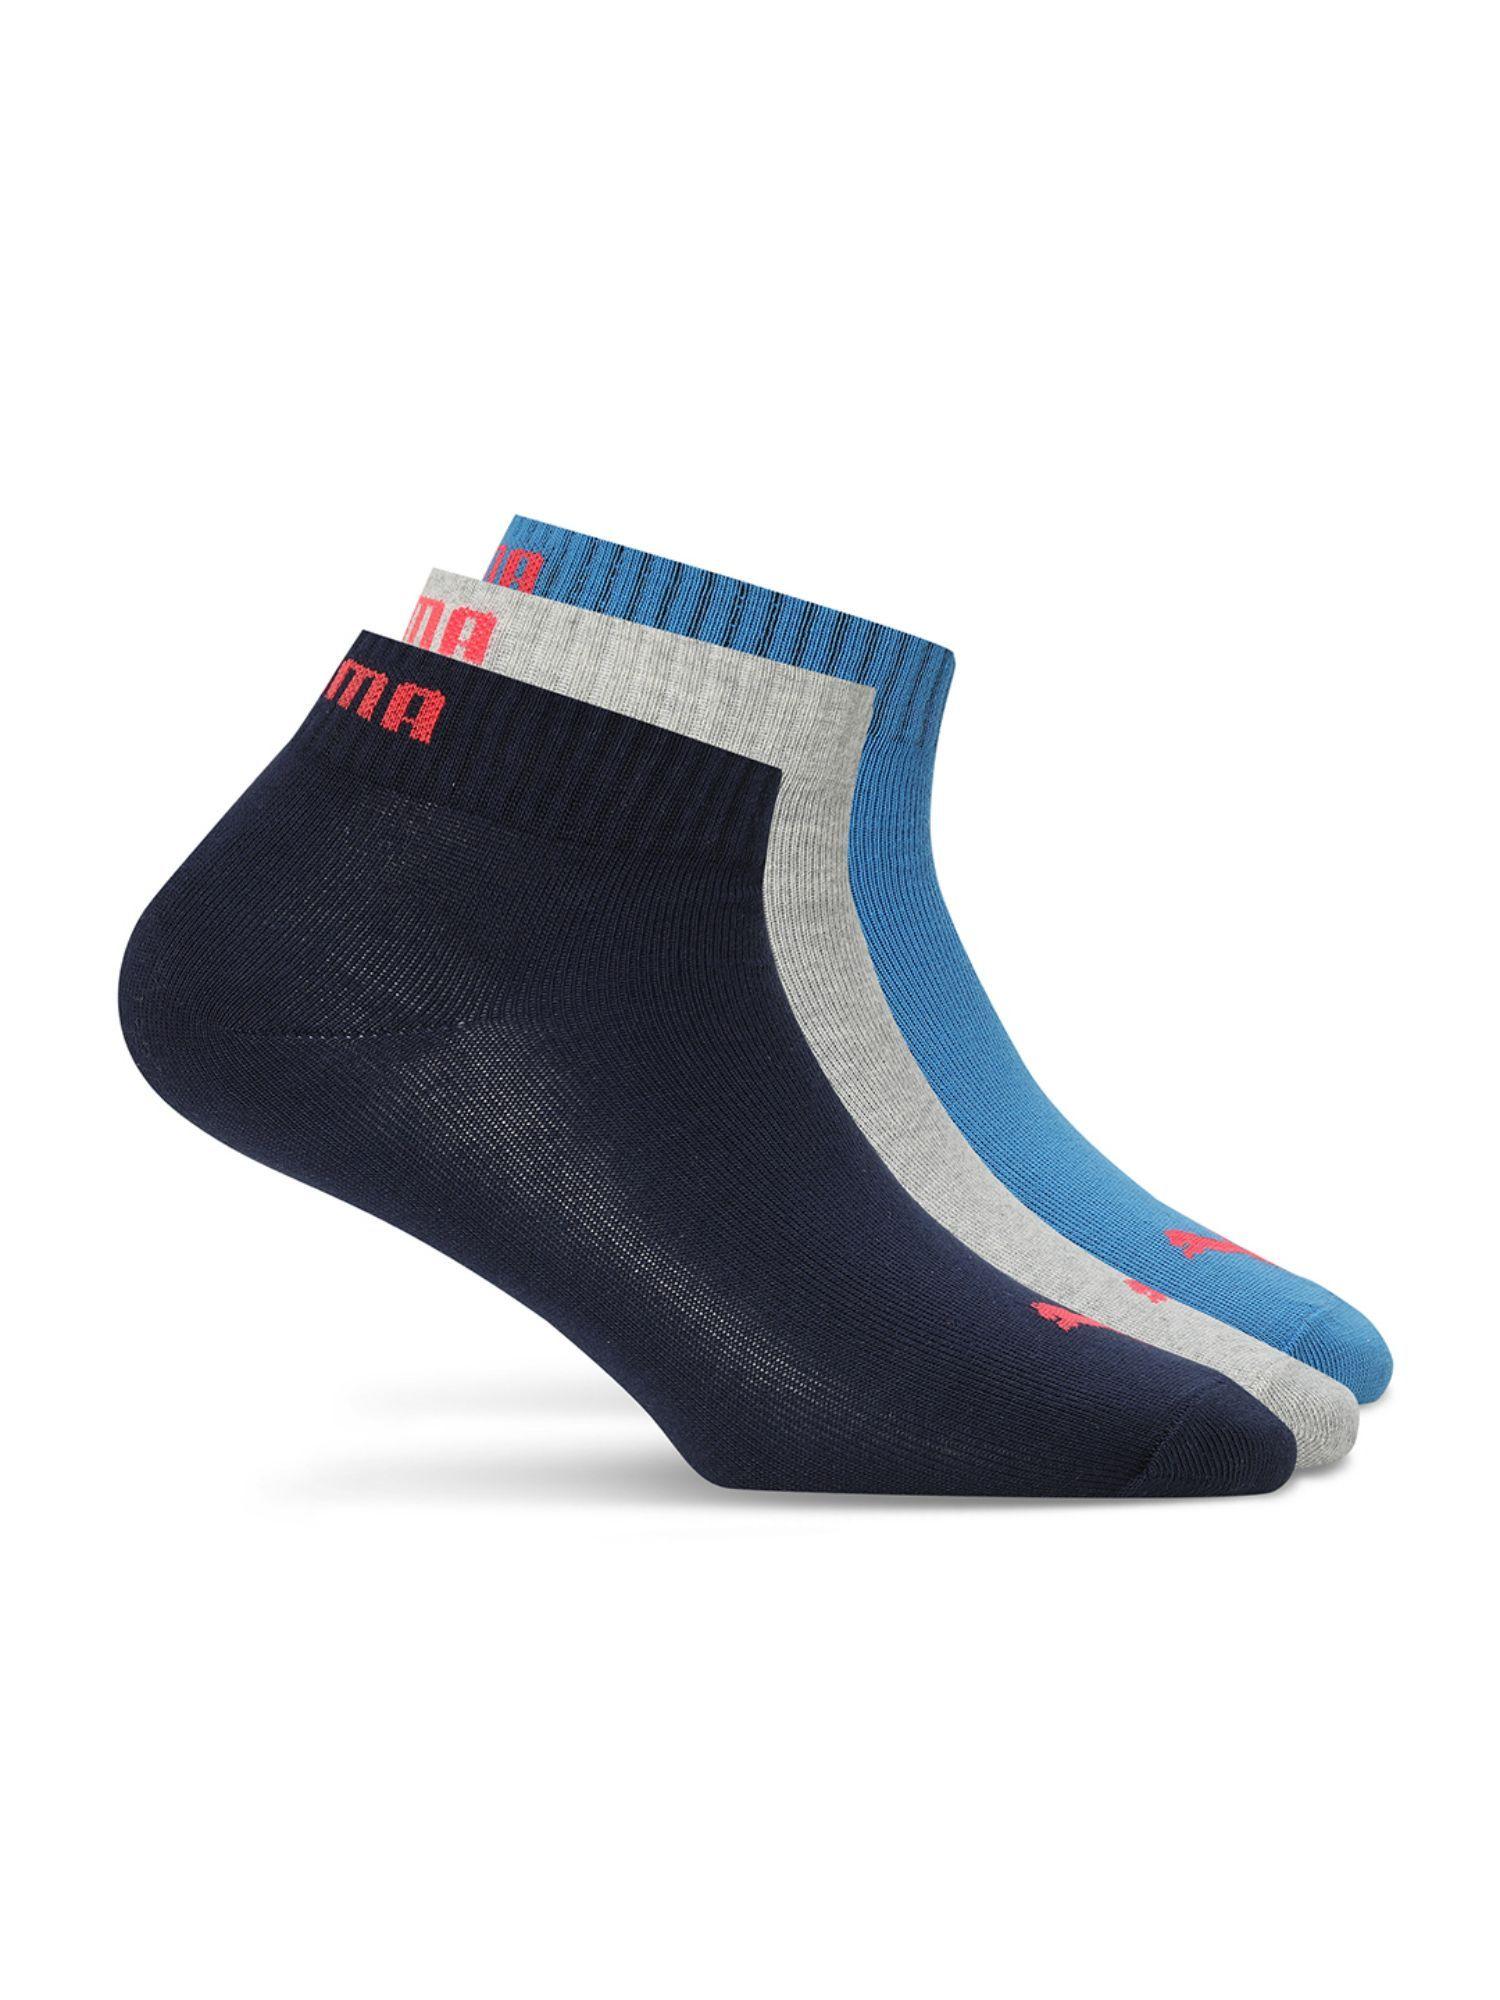 quarter plain unisex multi-color socks (pack of 3)